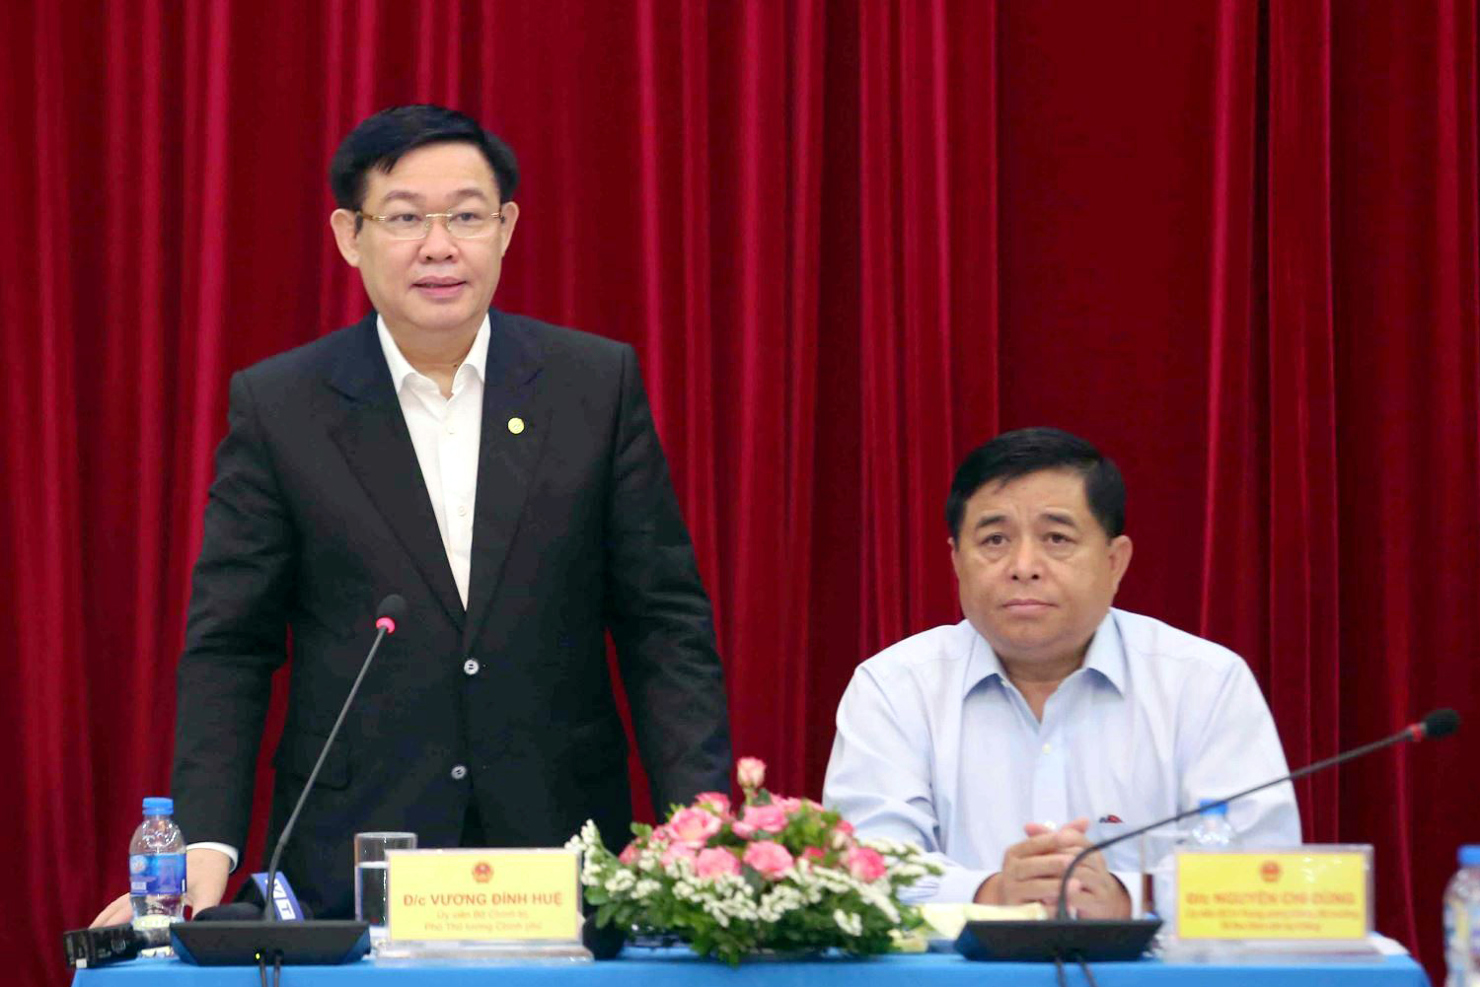 Phó Thủ tướng Vương Đình Huệ yêu cầu phải rà soát các bất cập của hệ thống nghị định, Luật Đầu tư công để kiến nghị sửa đổi.